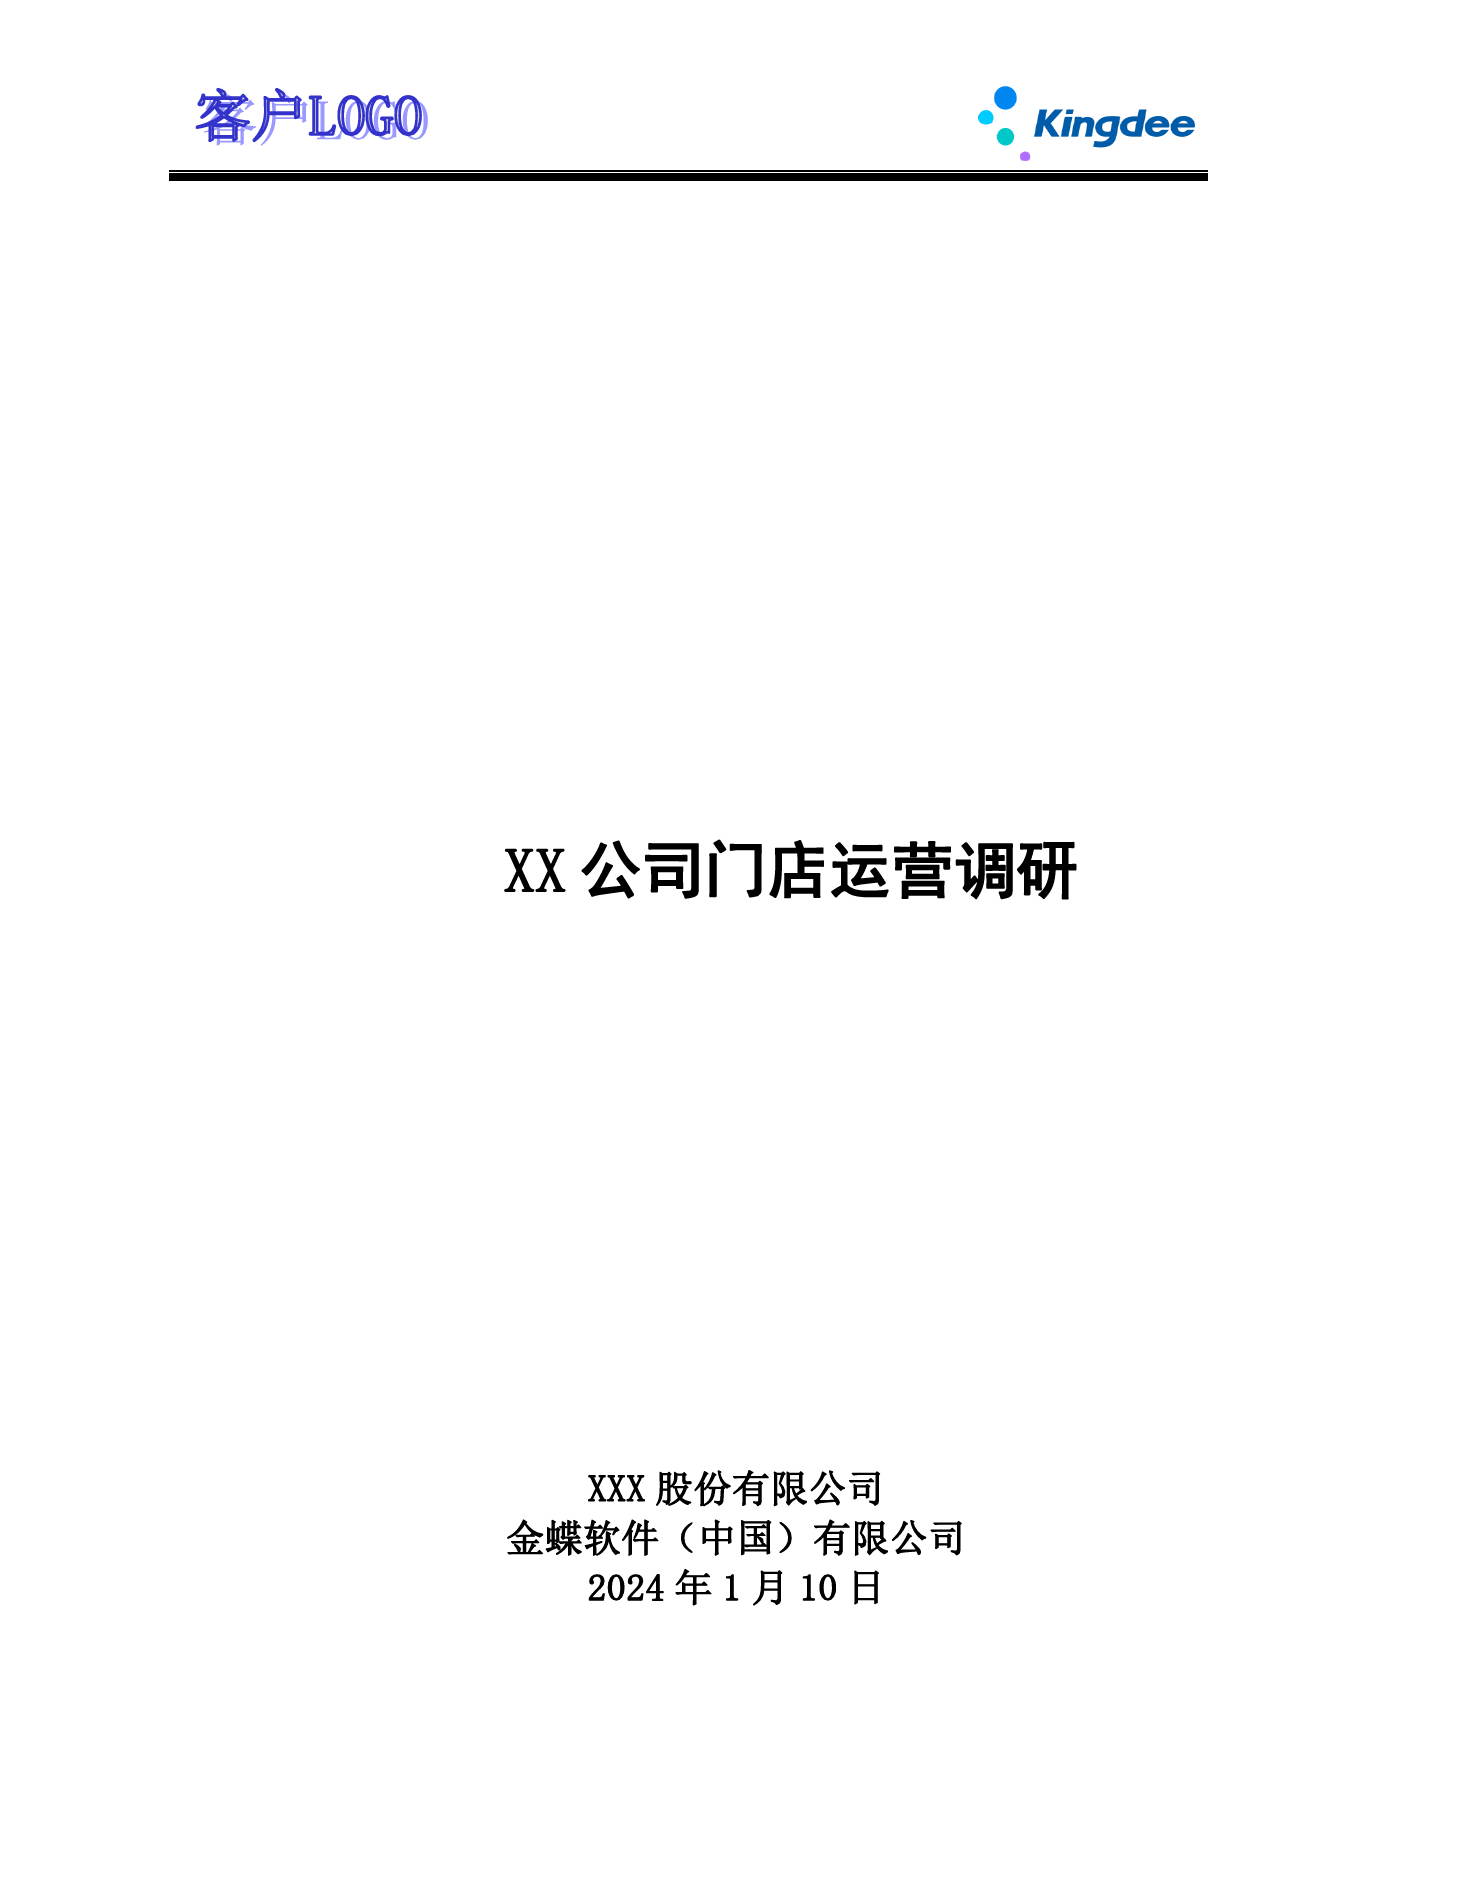 金蝶云社区-ECY2202 调研问卷 _门店运营调研V2.1